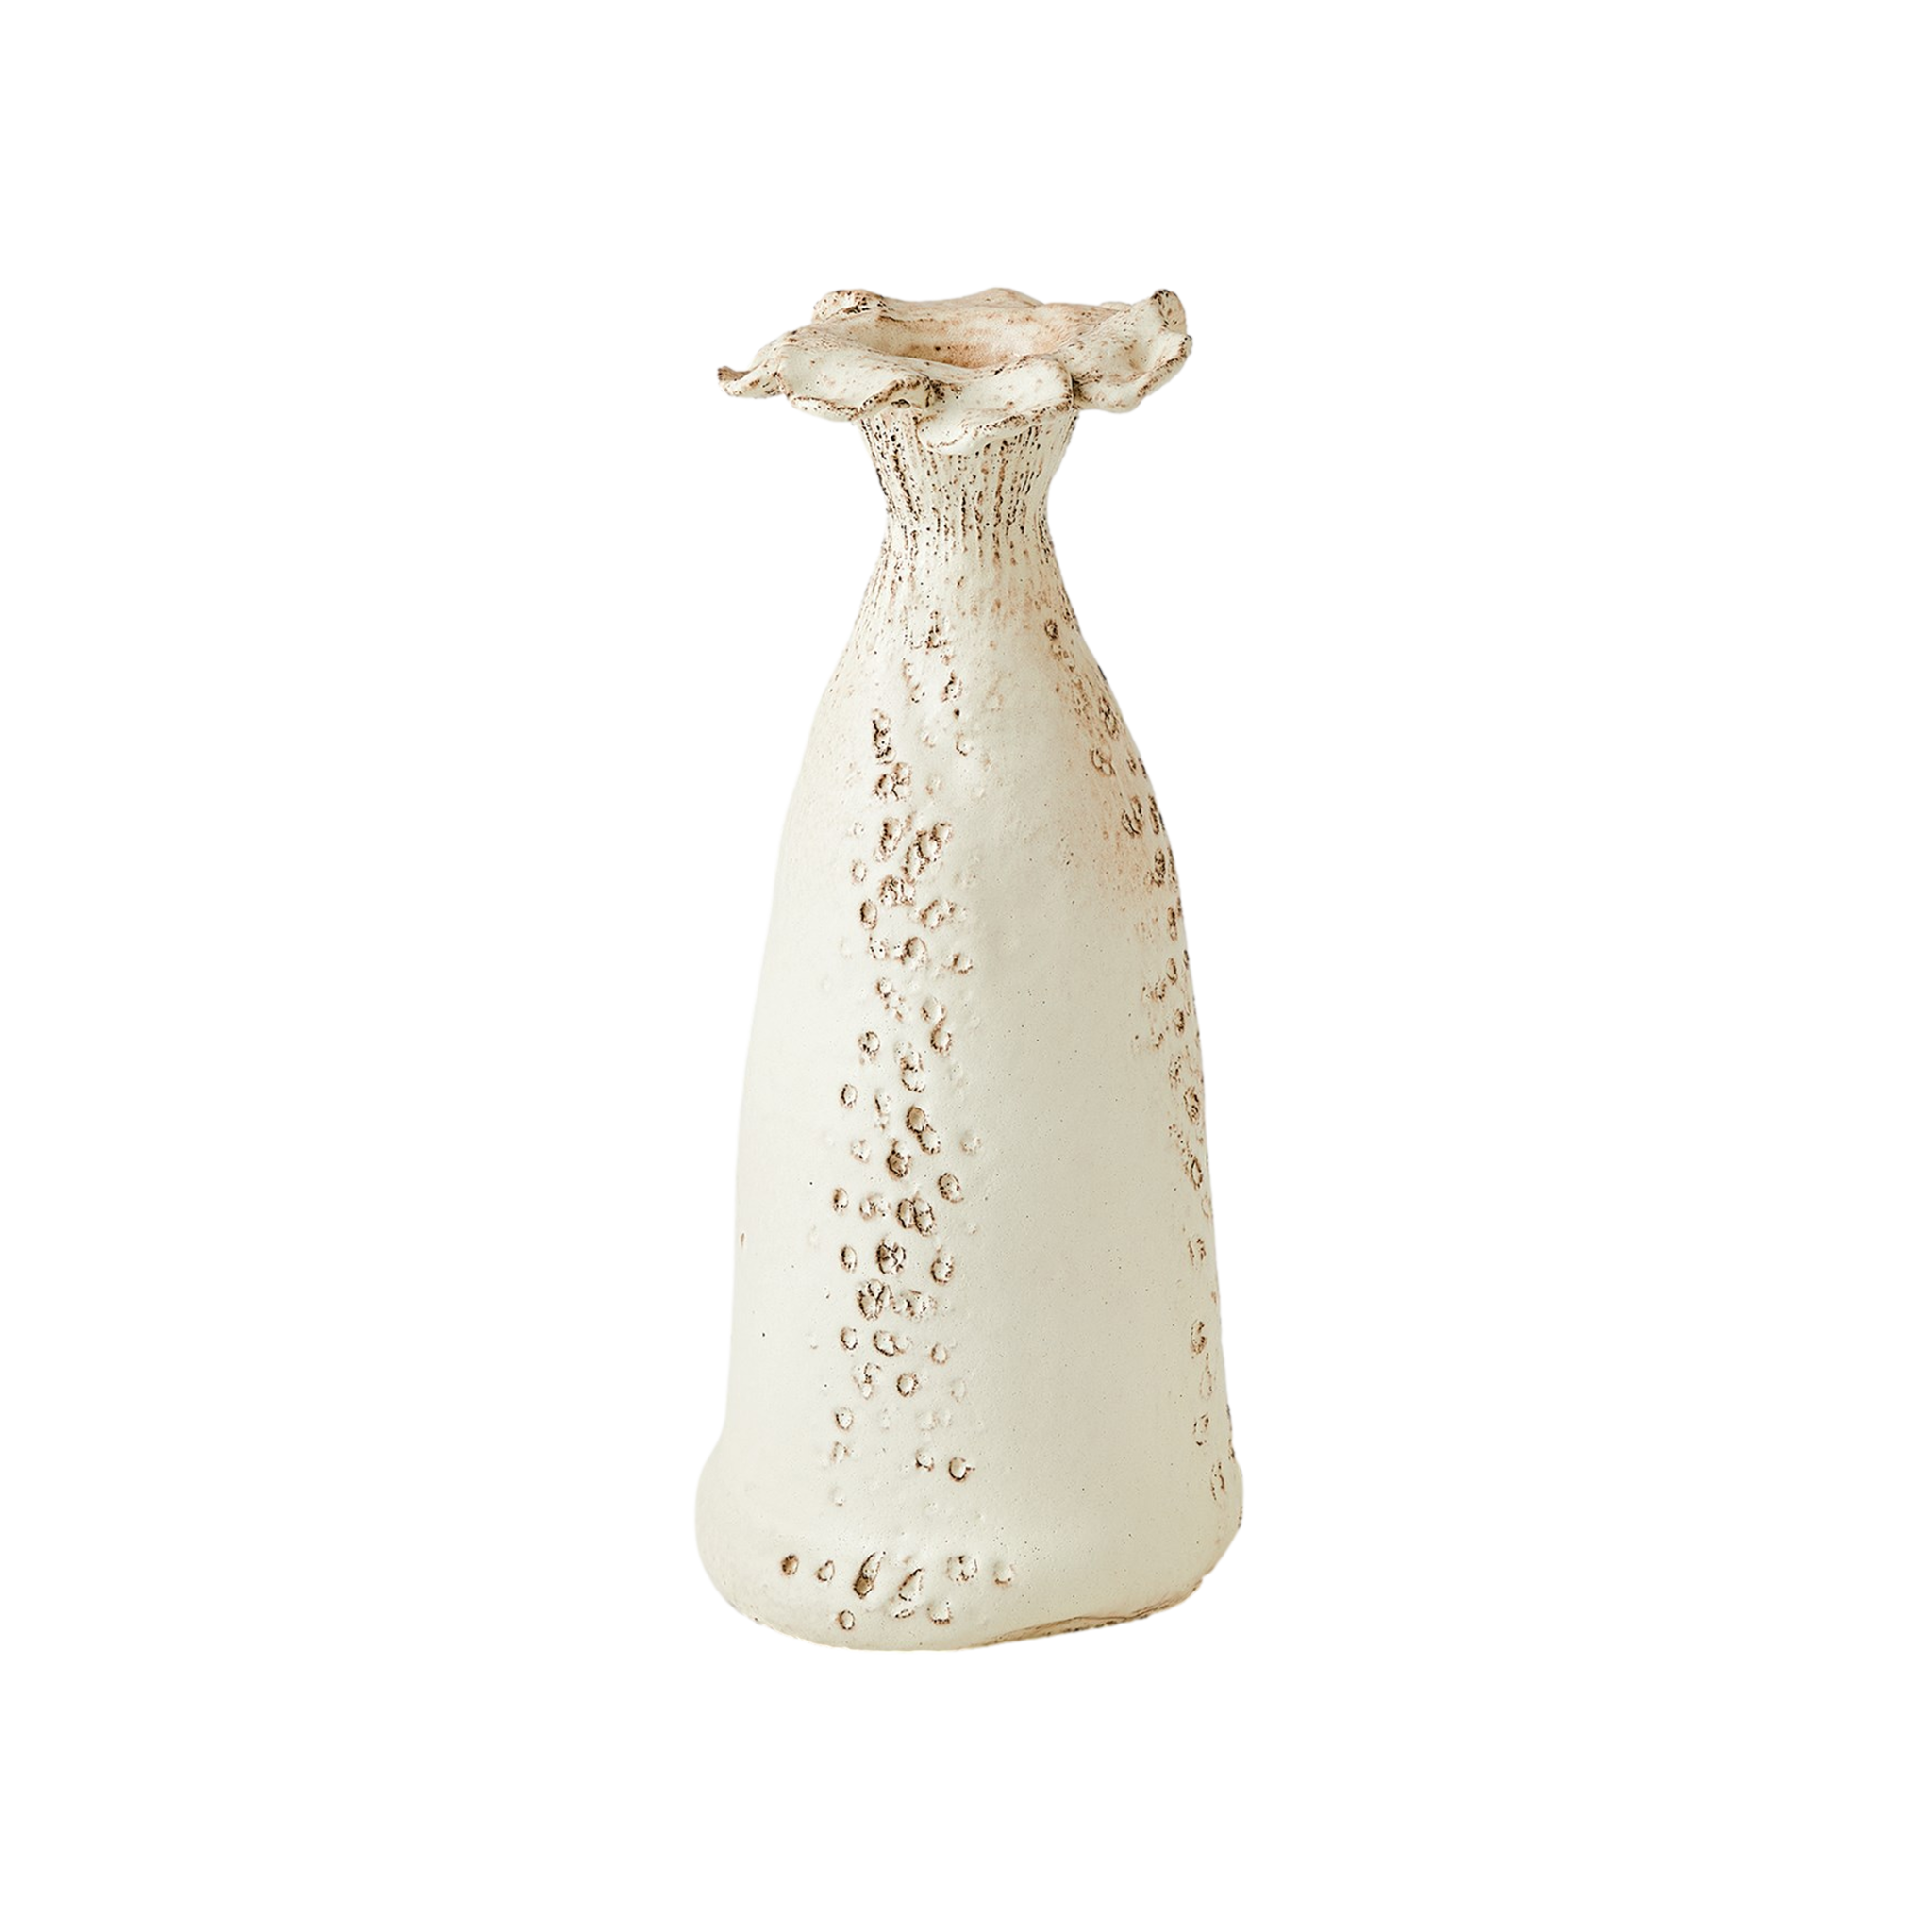 Blossom Vase in Ivory